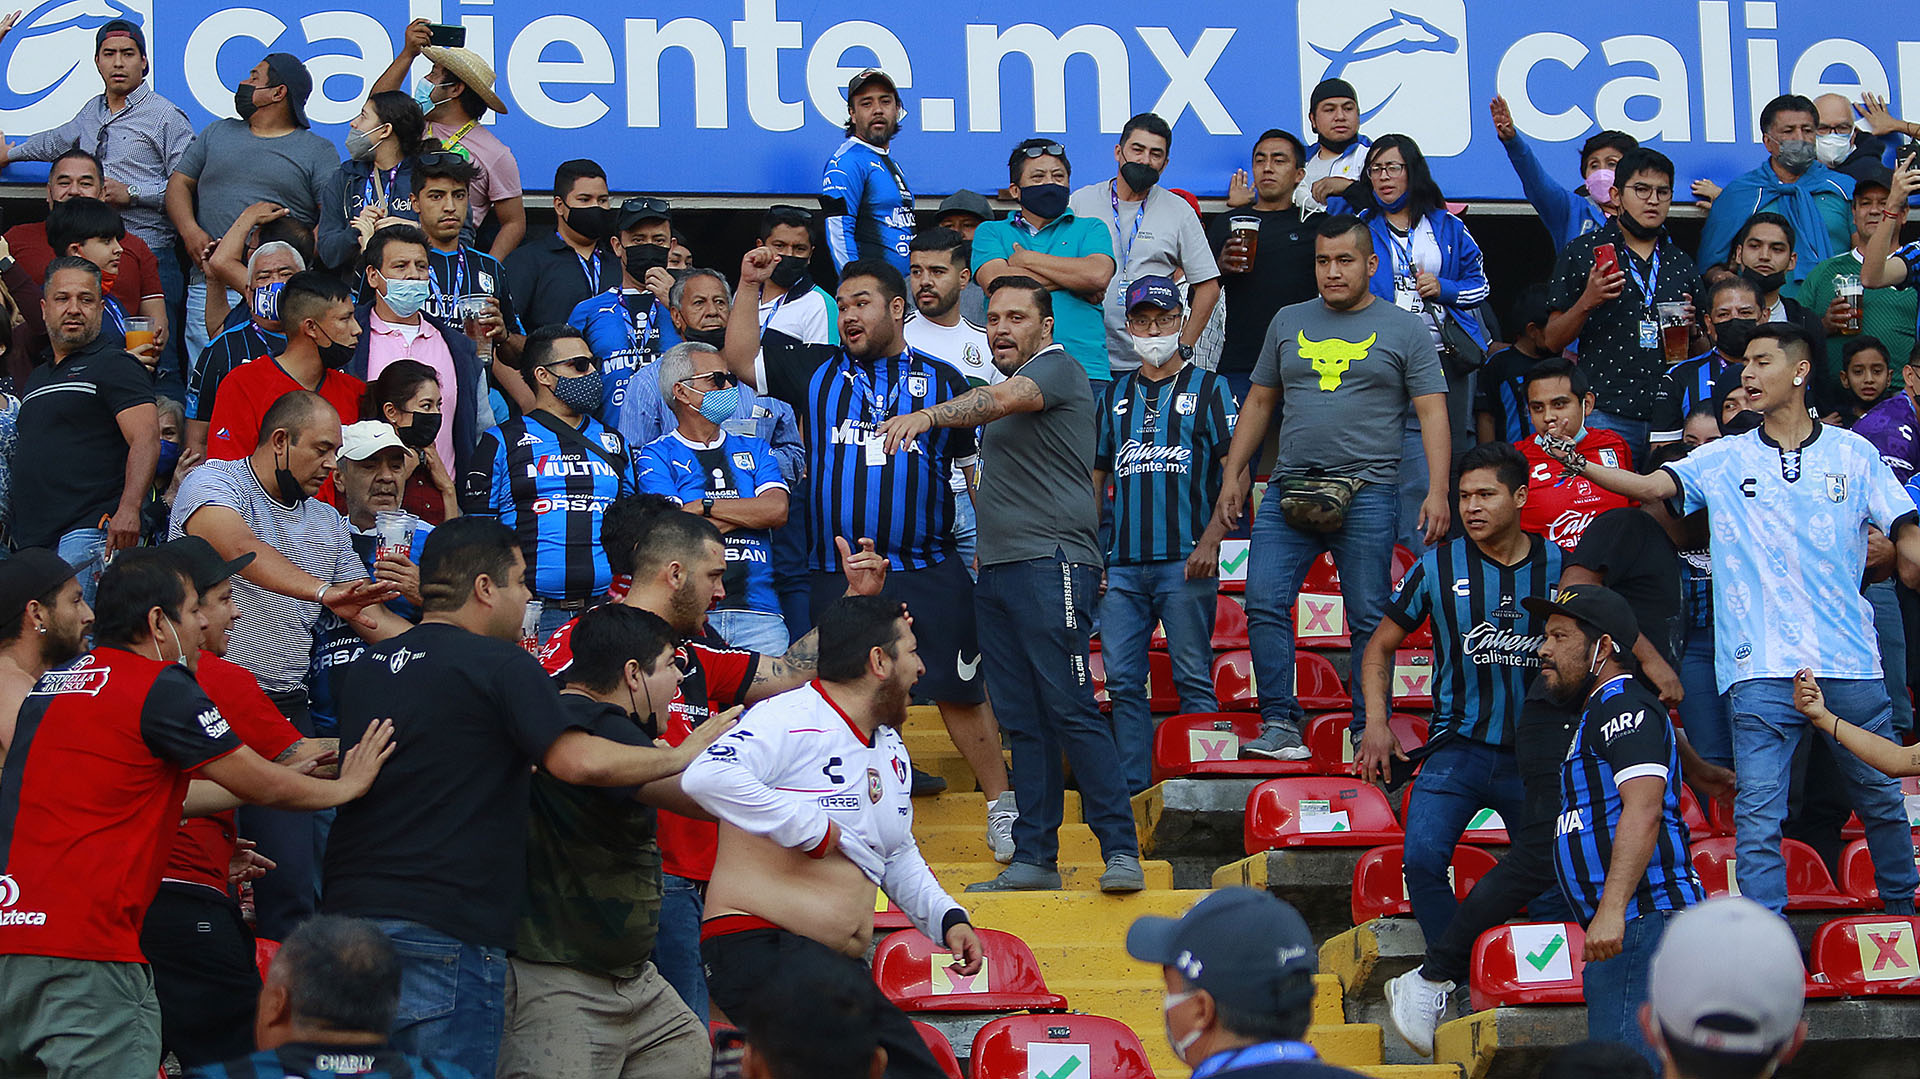 Aficionados de Querétaro y Atlas se enfrentaron al minuto 62, donde familias tuvieron que ser resguardadas en la cancha, durante un juego correspondiente a la jornada 9 del Torneo Clausura 2022 de la Liga MX del fútbol mexicano en el estadio Corregidora de la ciudad de Querétaro (México). (Foto: Enrique Contla/EFE)